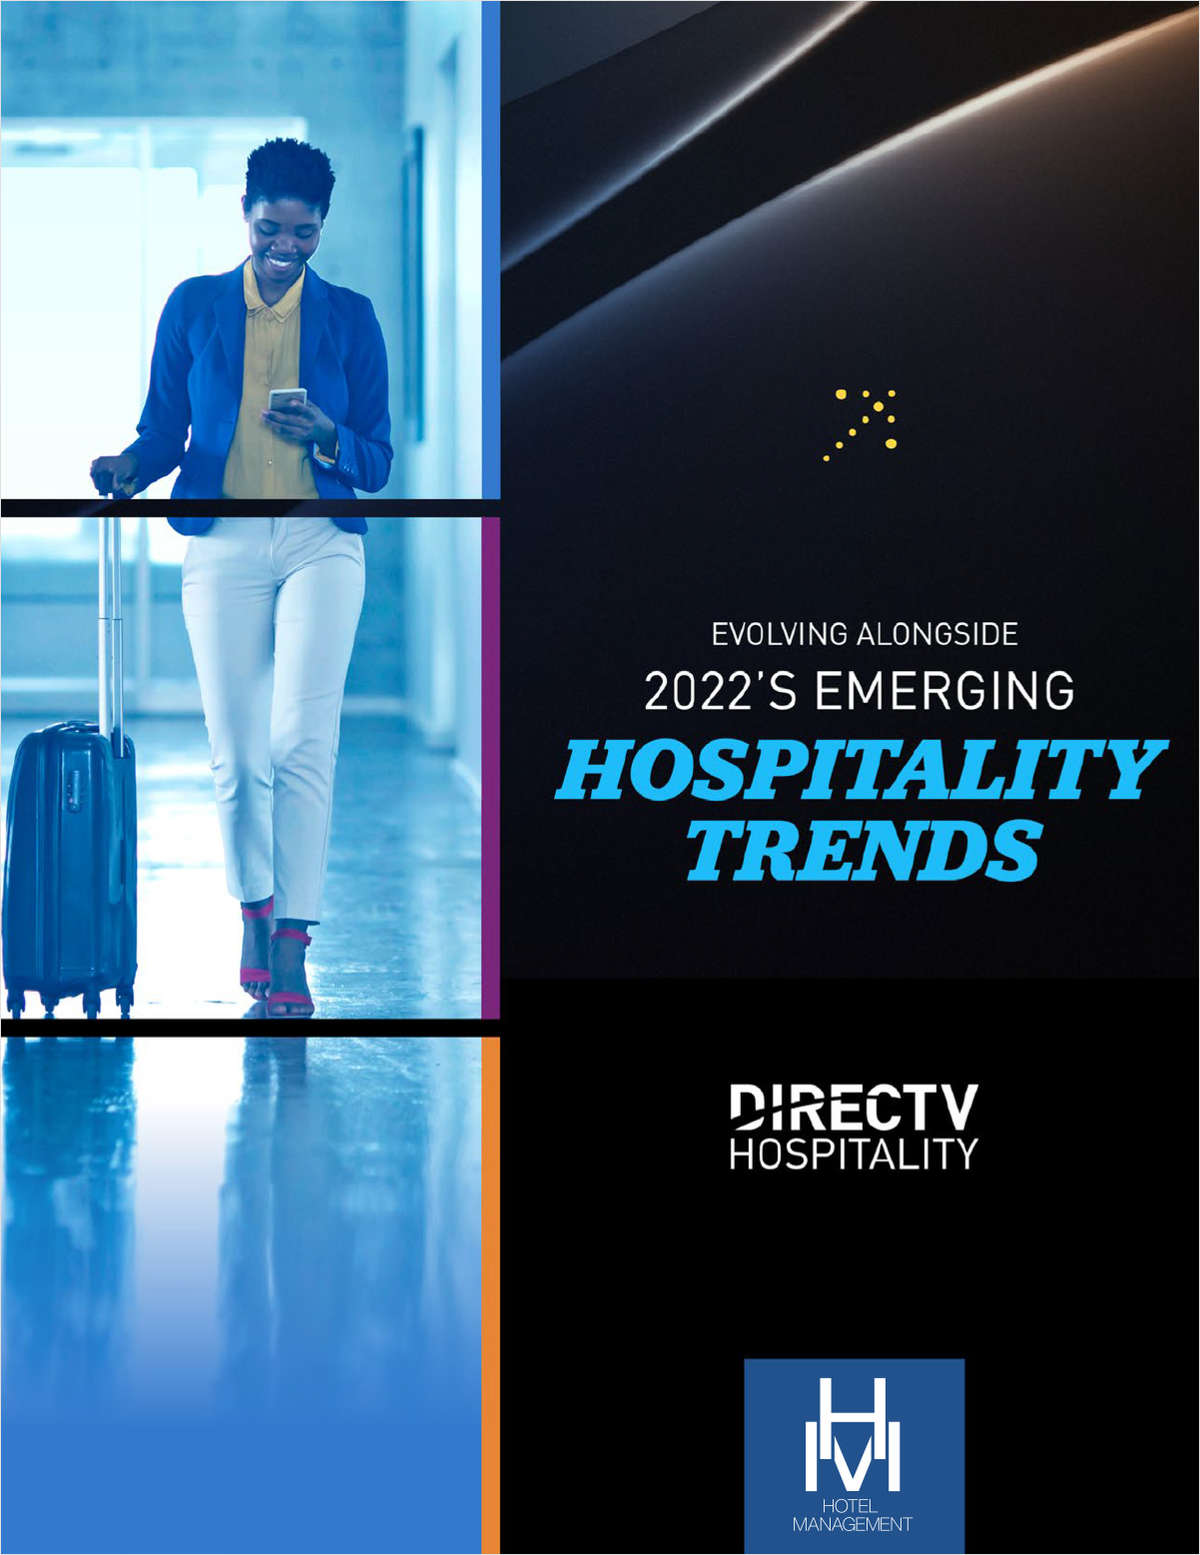 Evolving Alongside 2022's Emerging Hospitality Trends